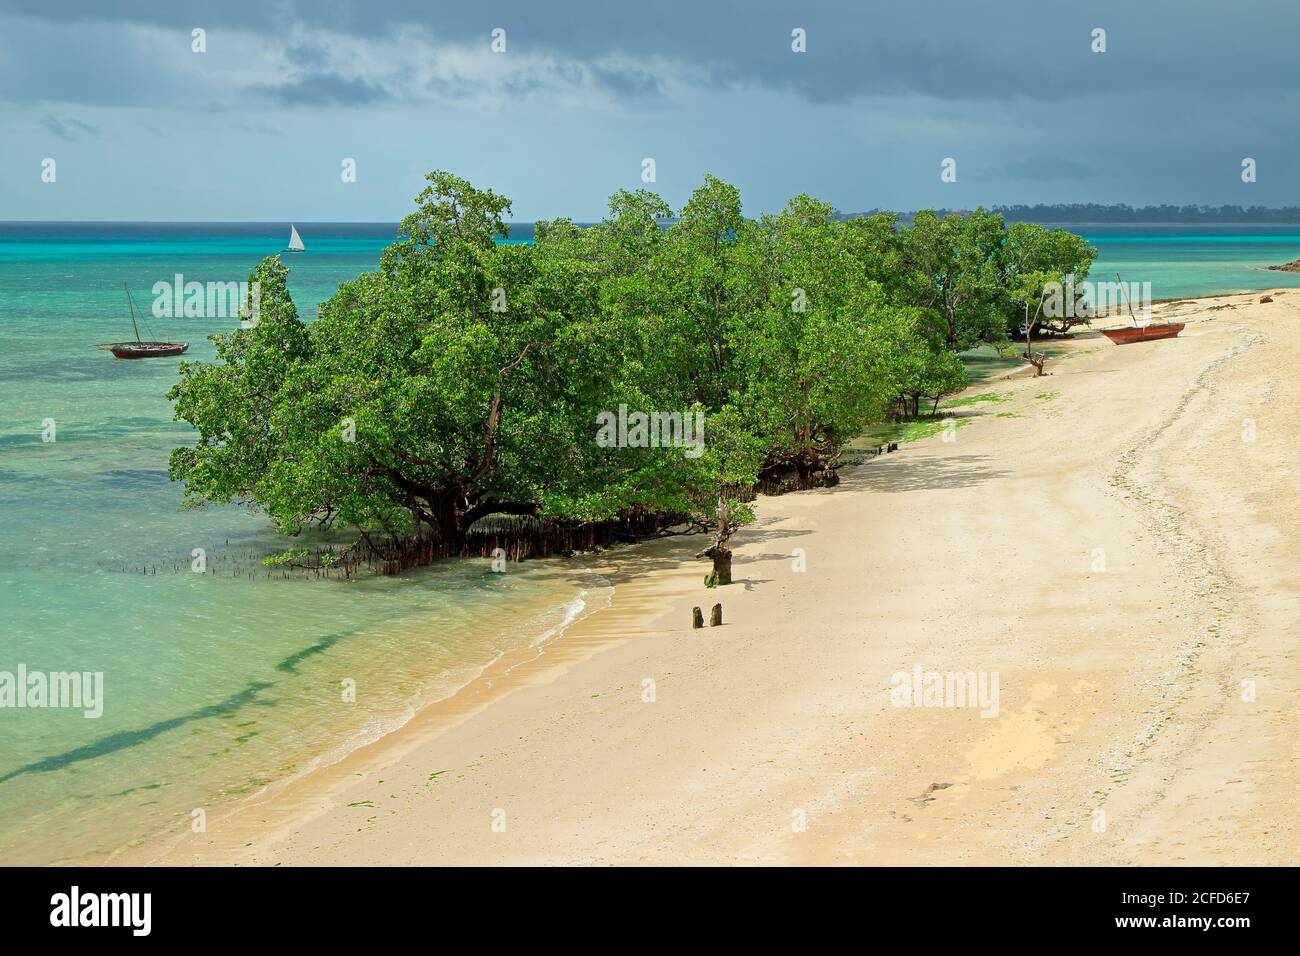 Alberi di mangrovie e spiaggia di sabbia sulla costa tropicale di Isola di Zanzibar Foto Stock